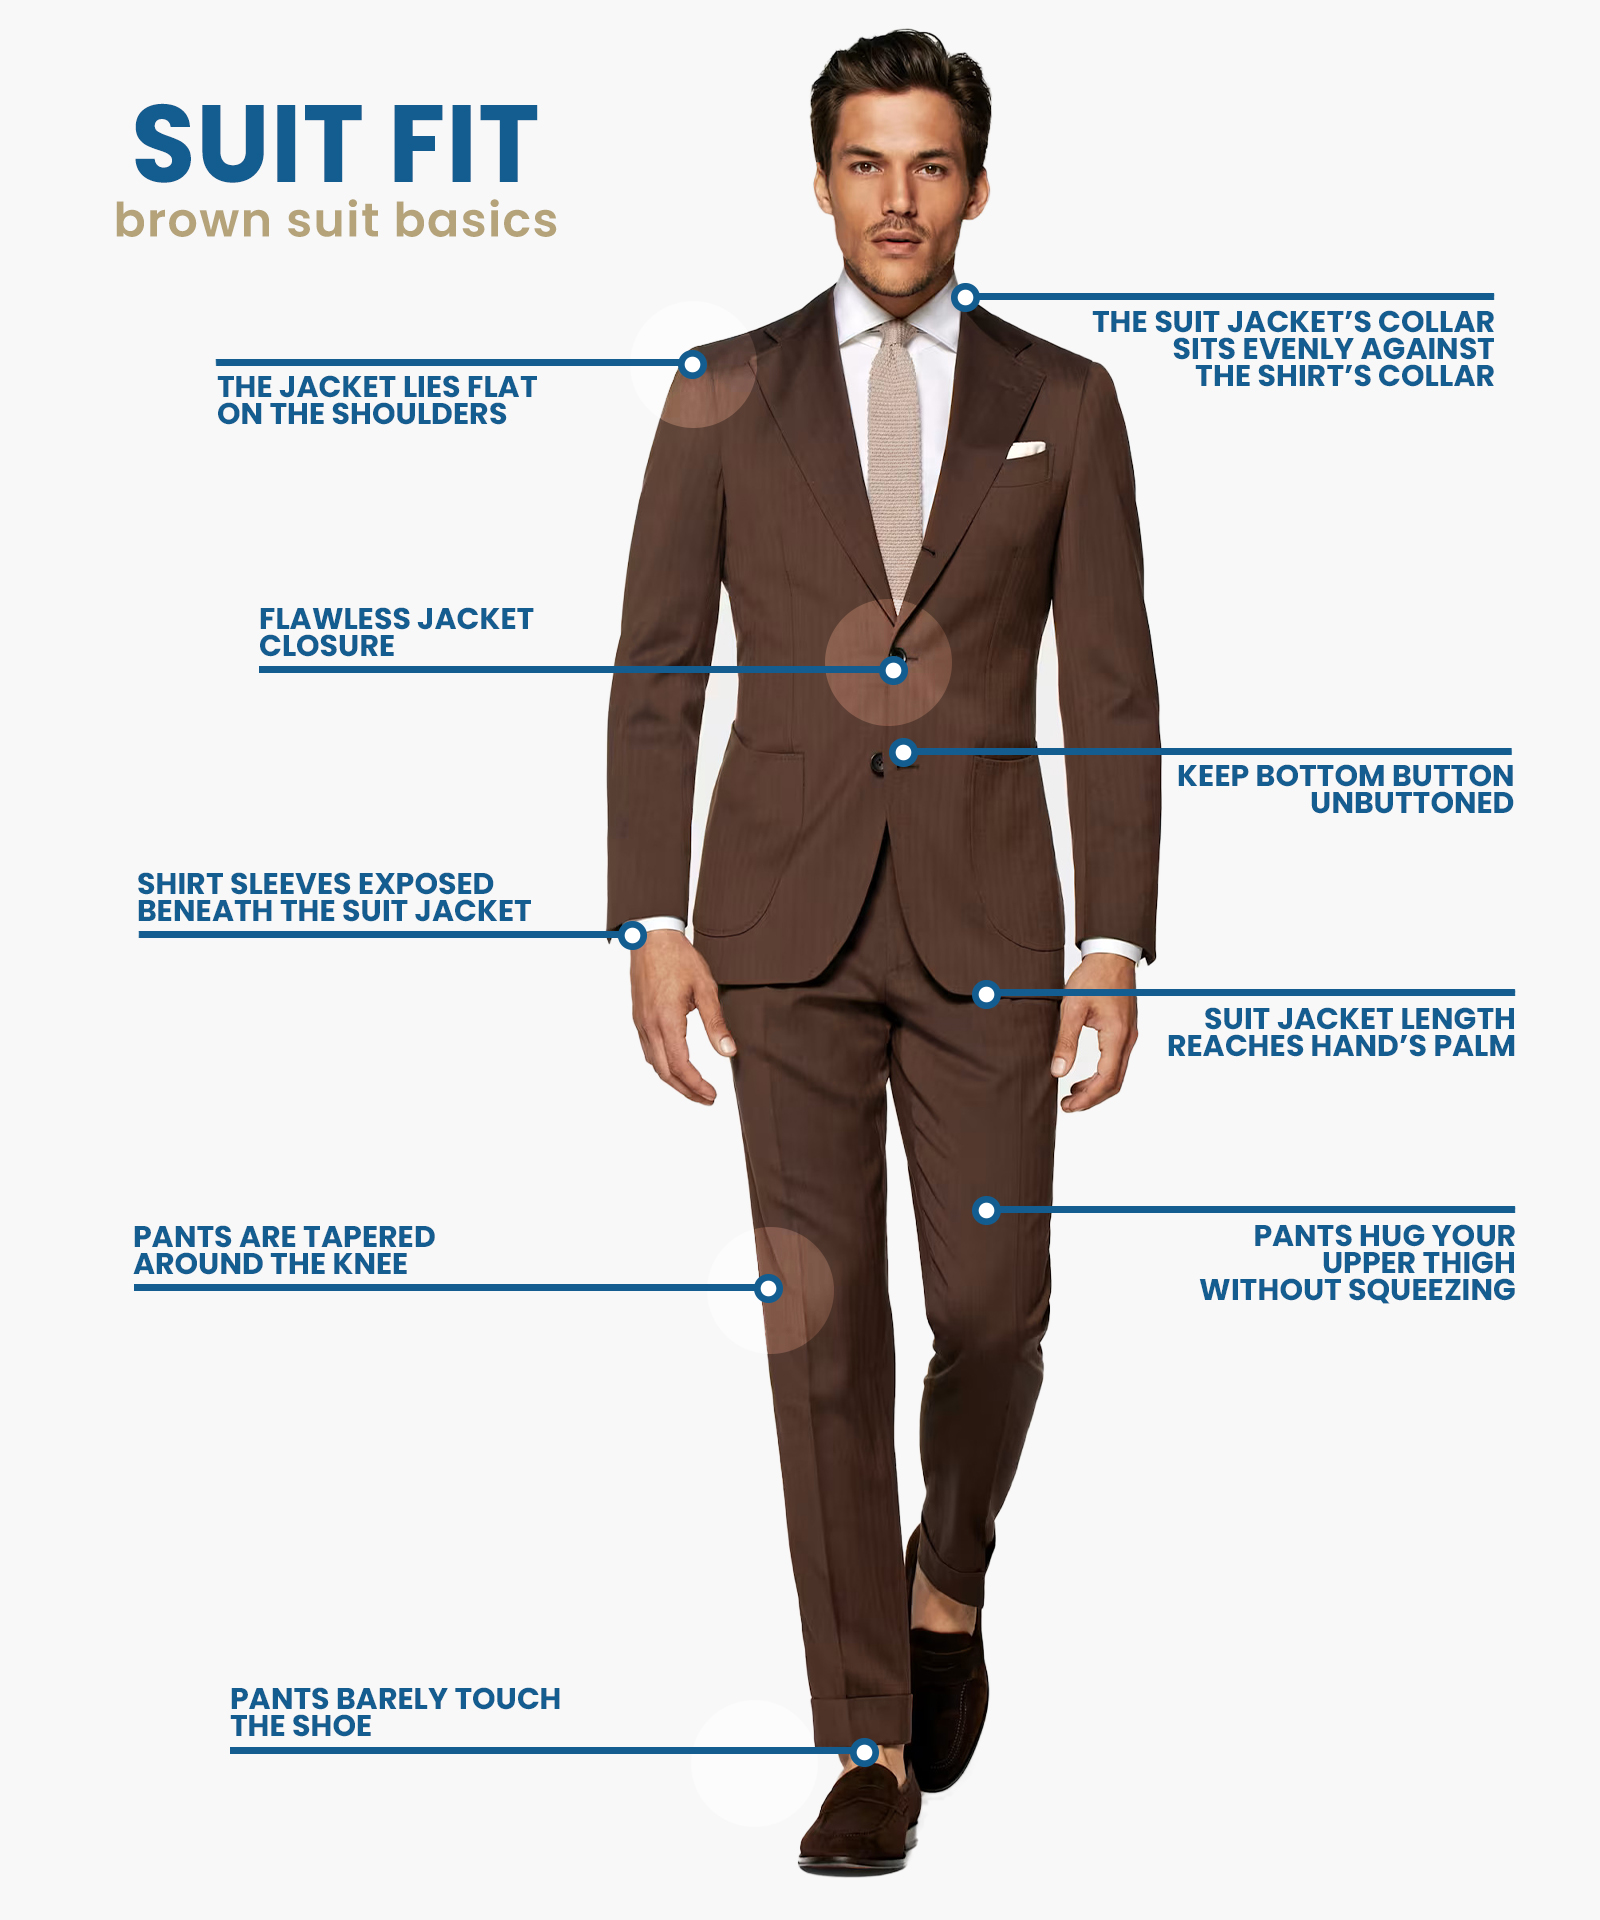 how should a brown suit fit